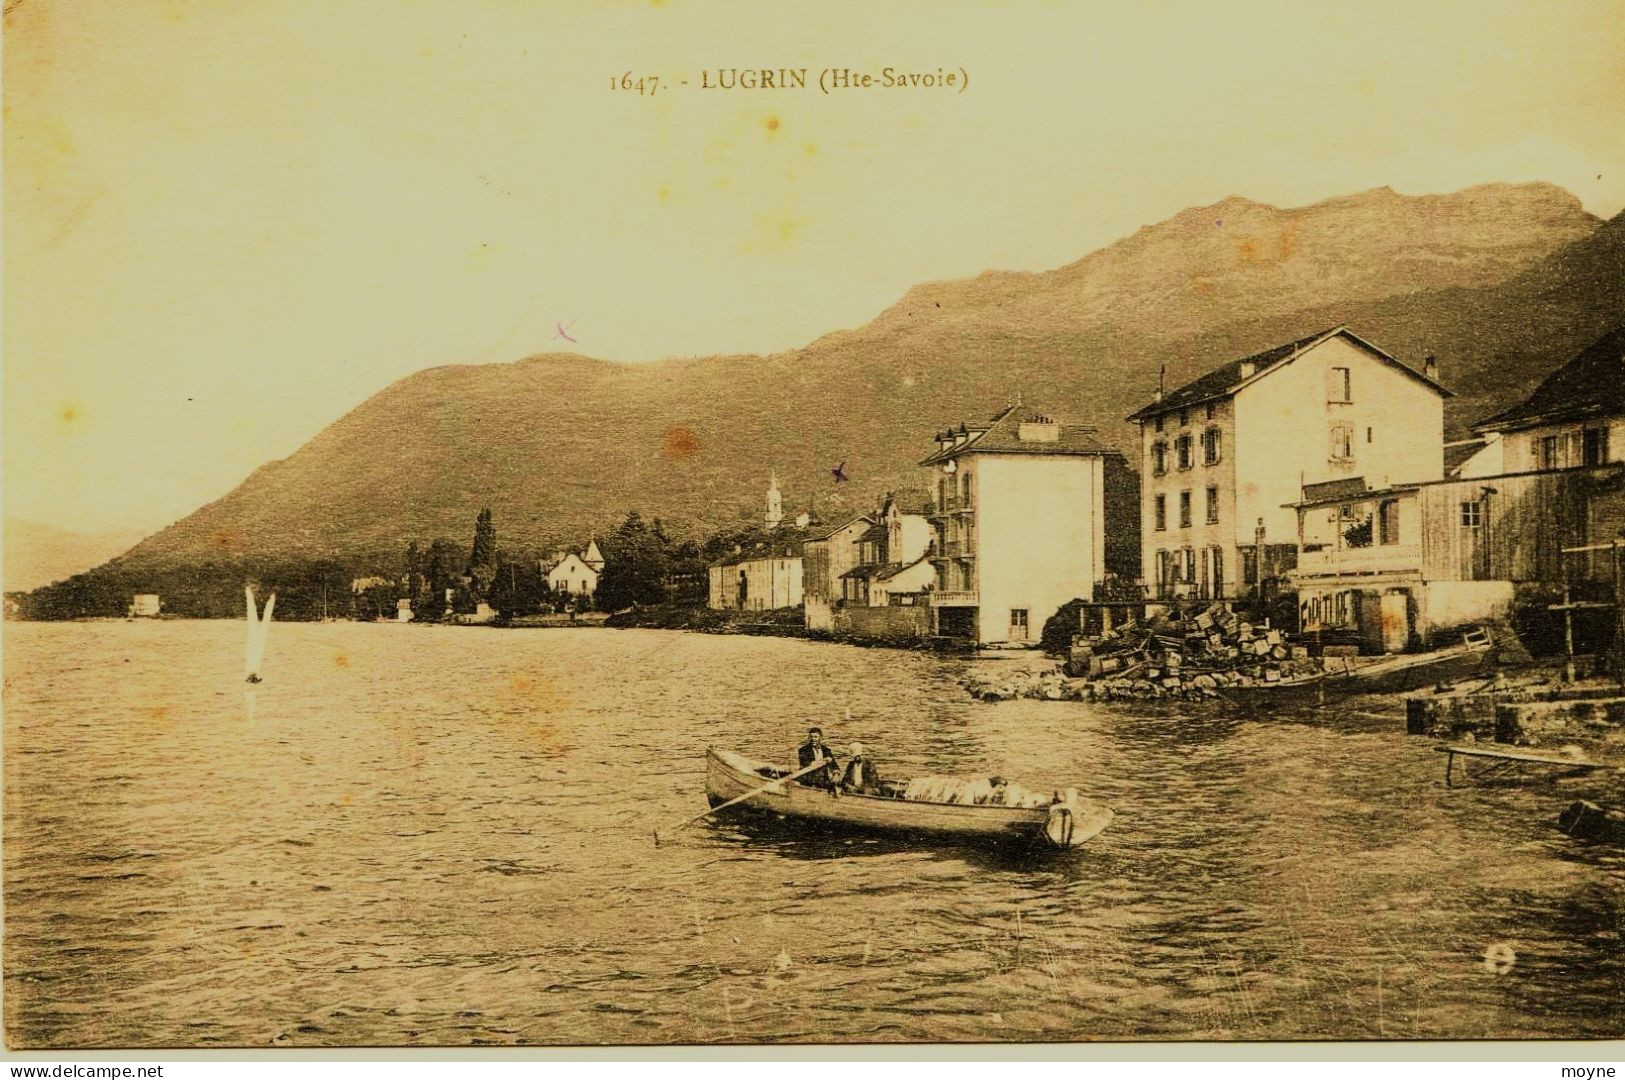 3421 - Hte Savoie - LUGRIN   DEPART POUR LA PËCHE AUX LAVARETS    - CIRCULEE EN 1926 - Lugrin